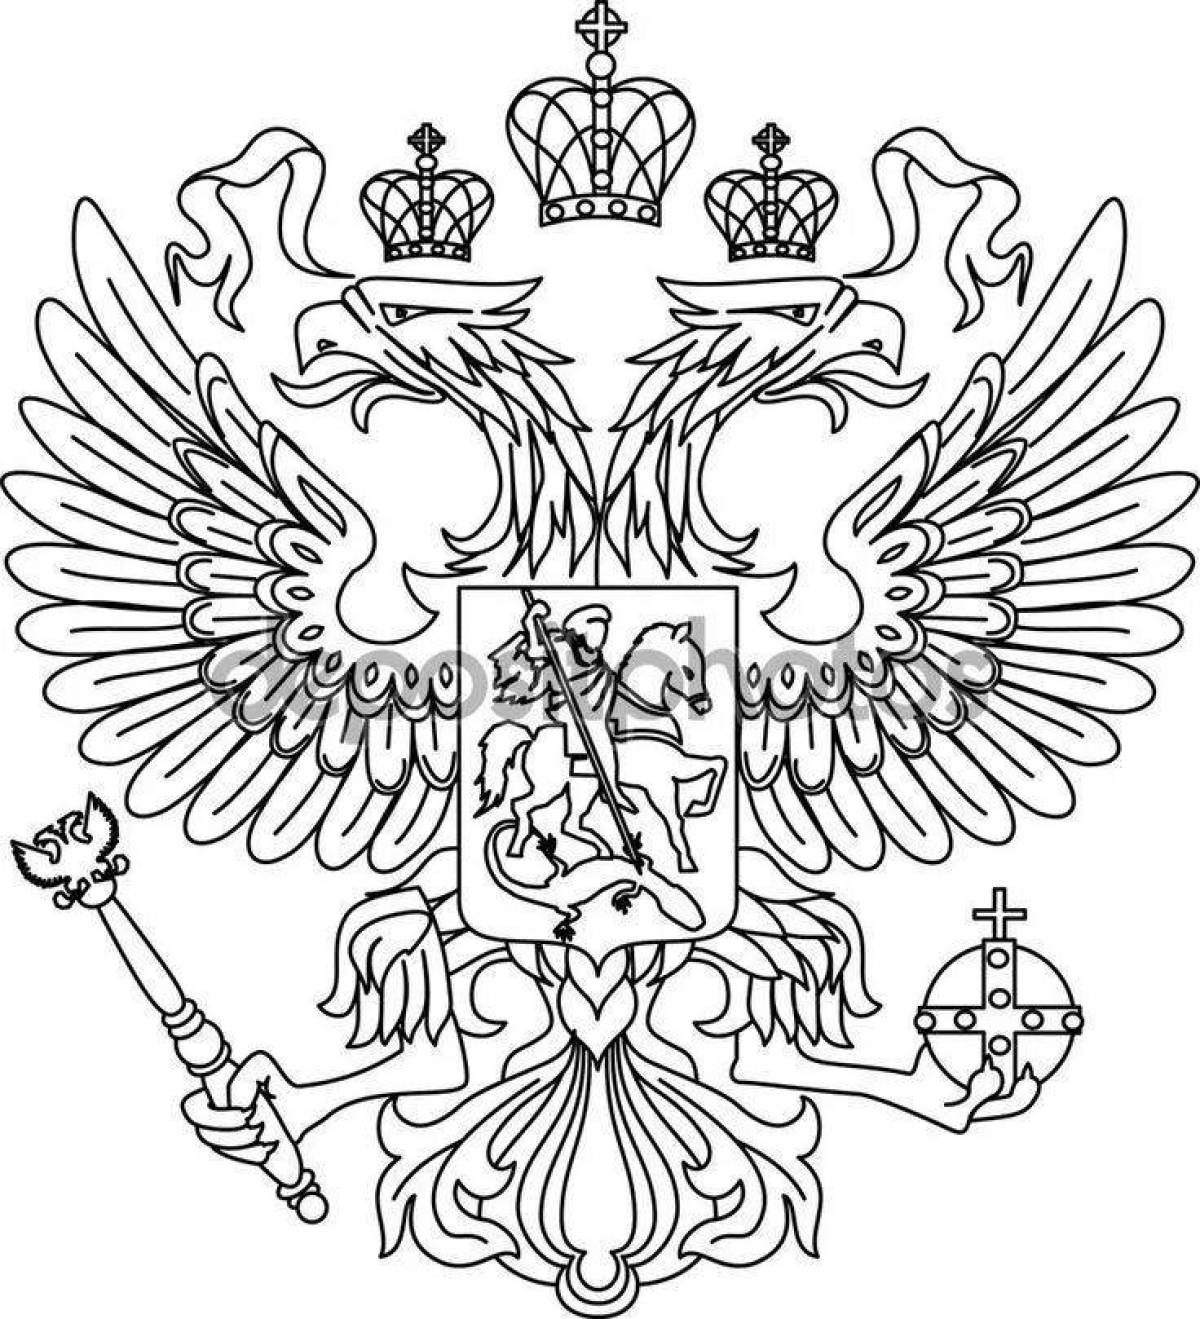 Грандиозный флаг российской империи